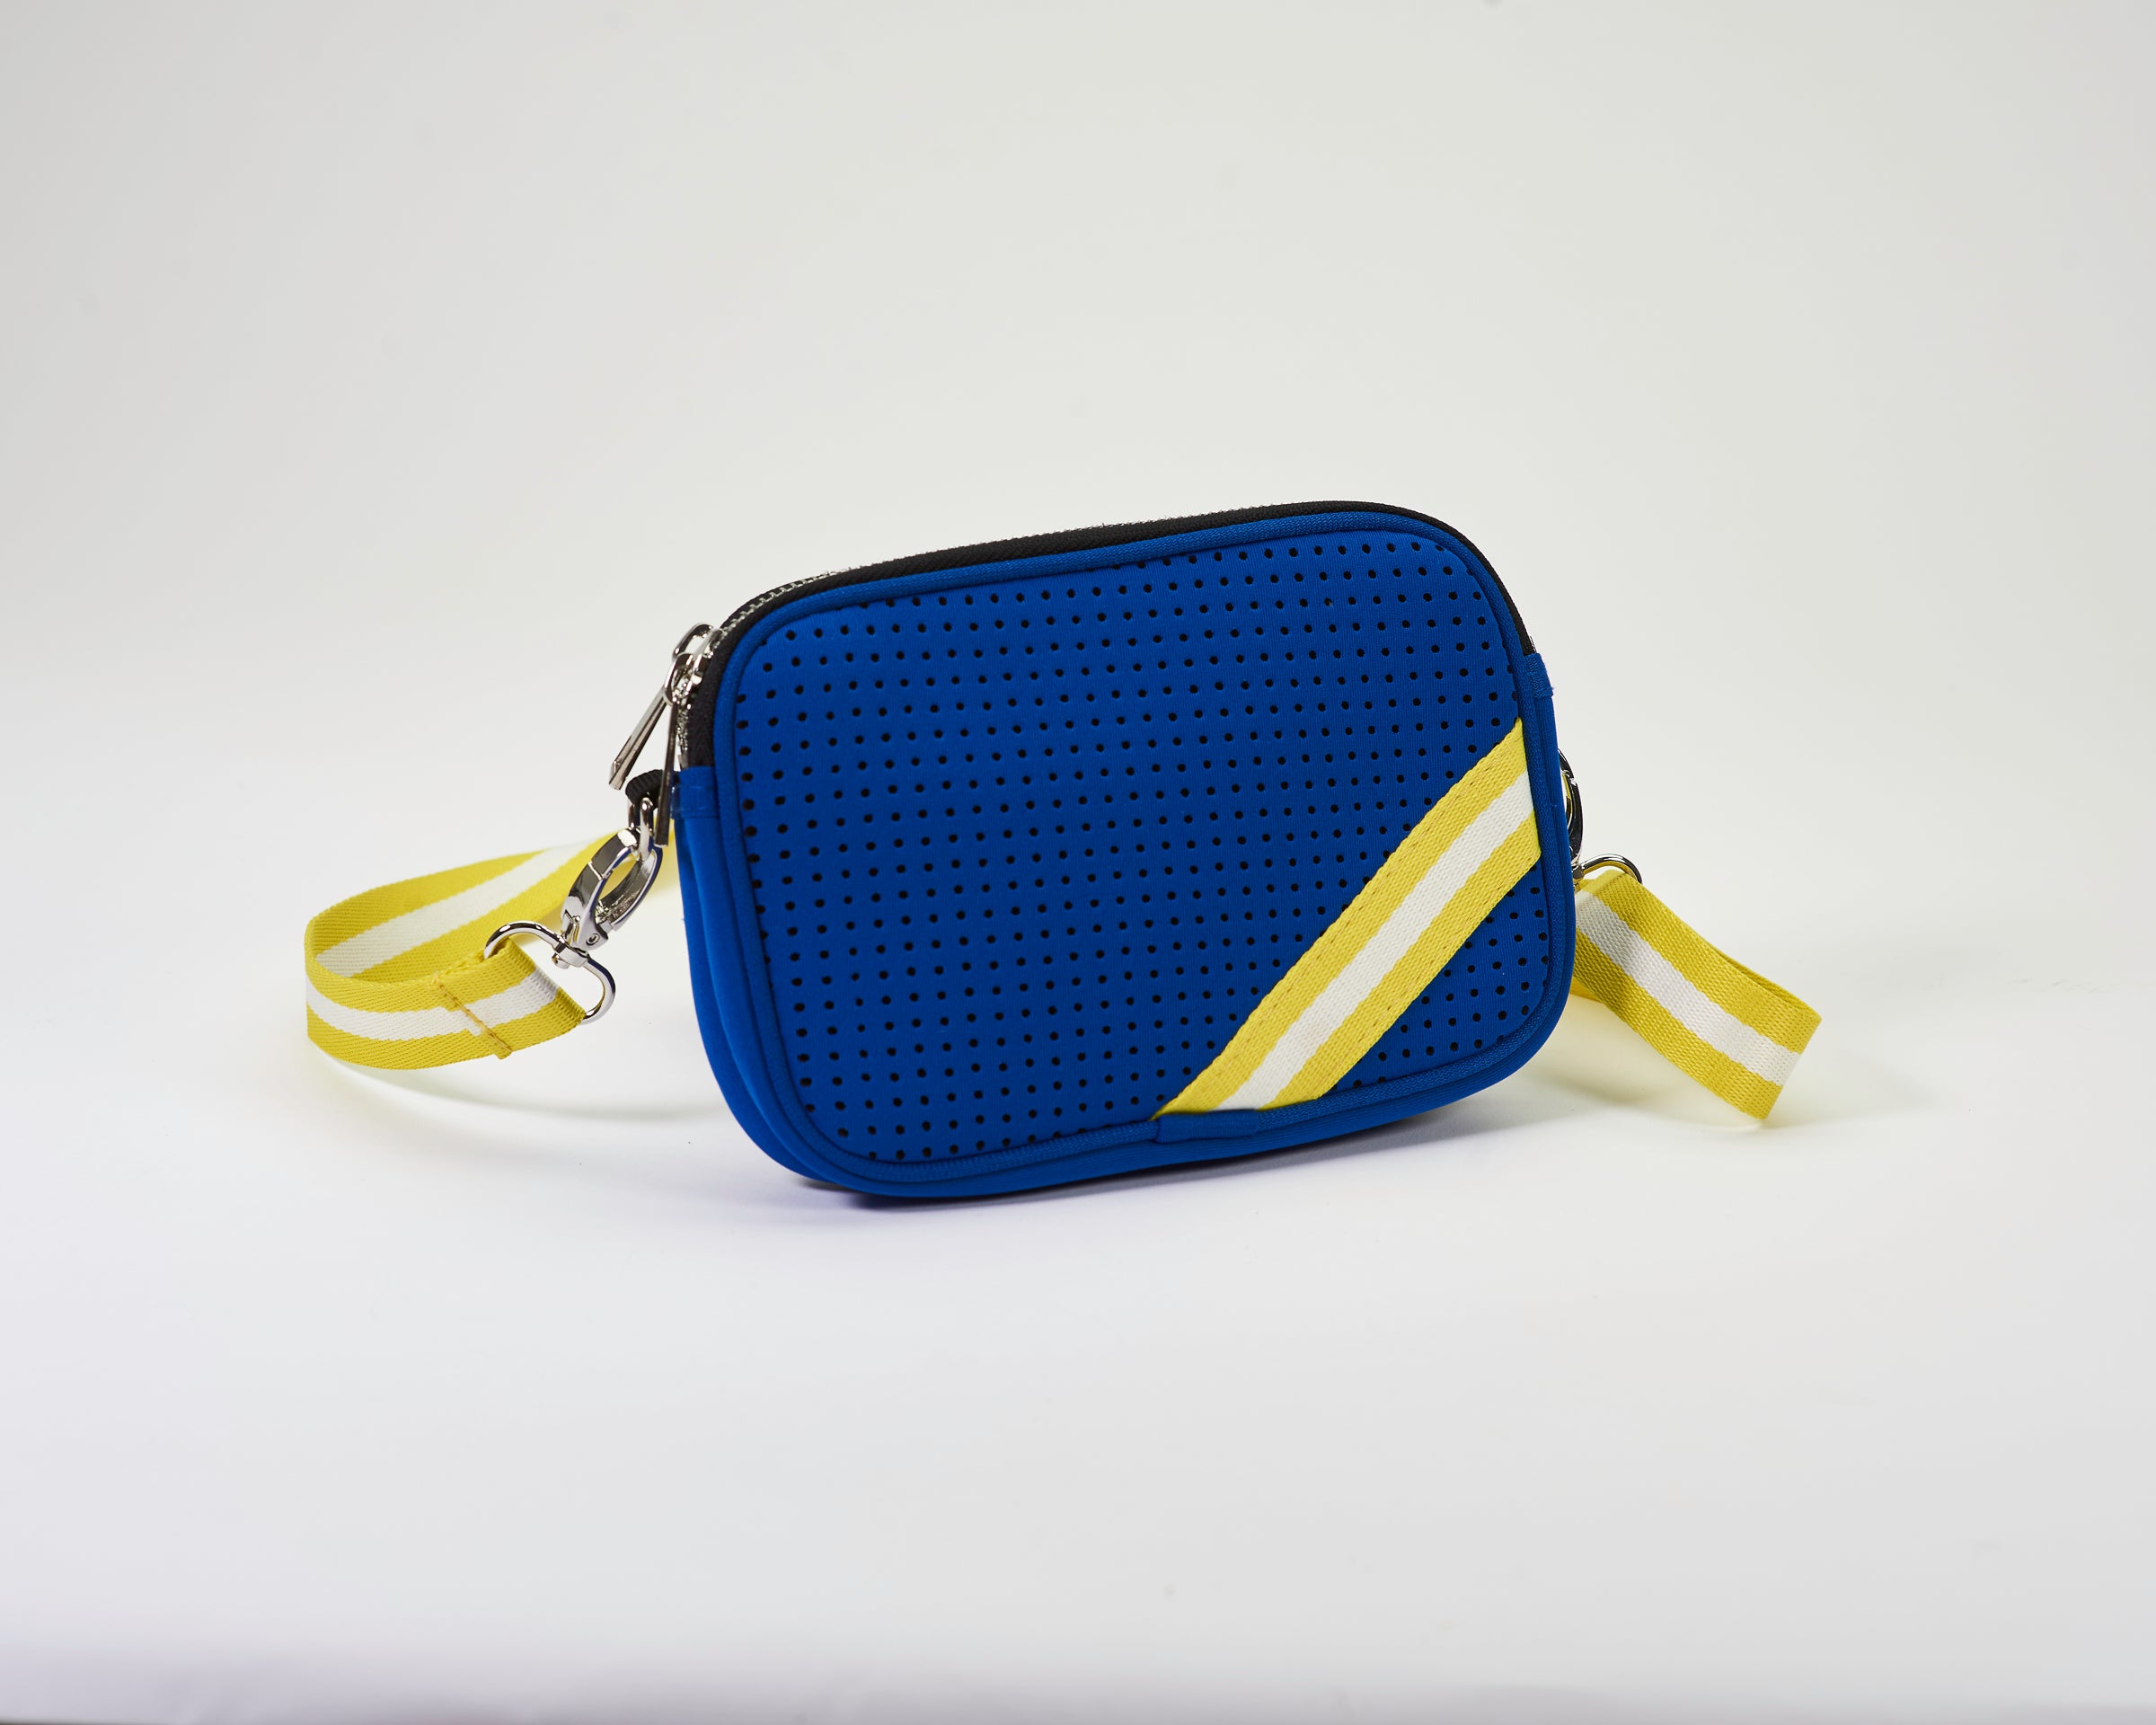 Tassel Zip PU Leather Sling Crossbody Bag Handbag for Women Messenger  Shoulder Bag-Royal Blue - Walmart.com